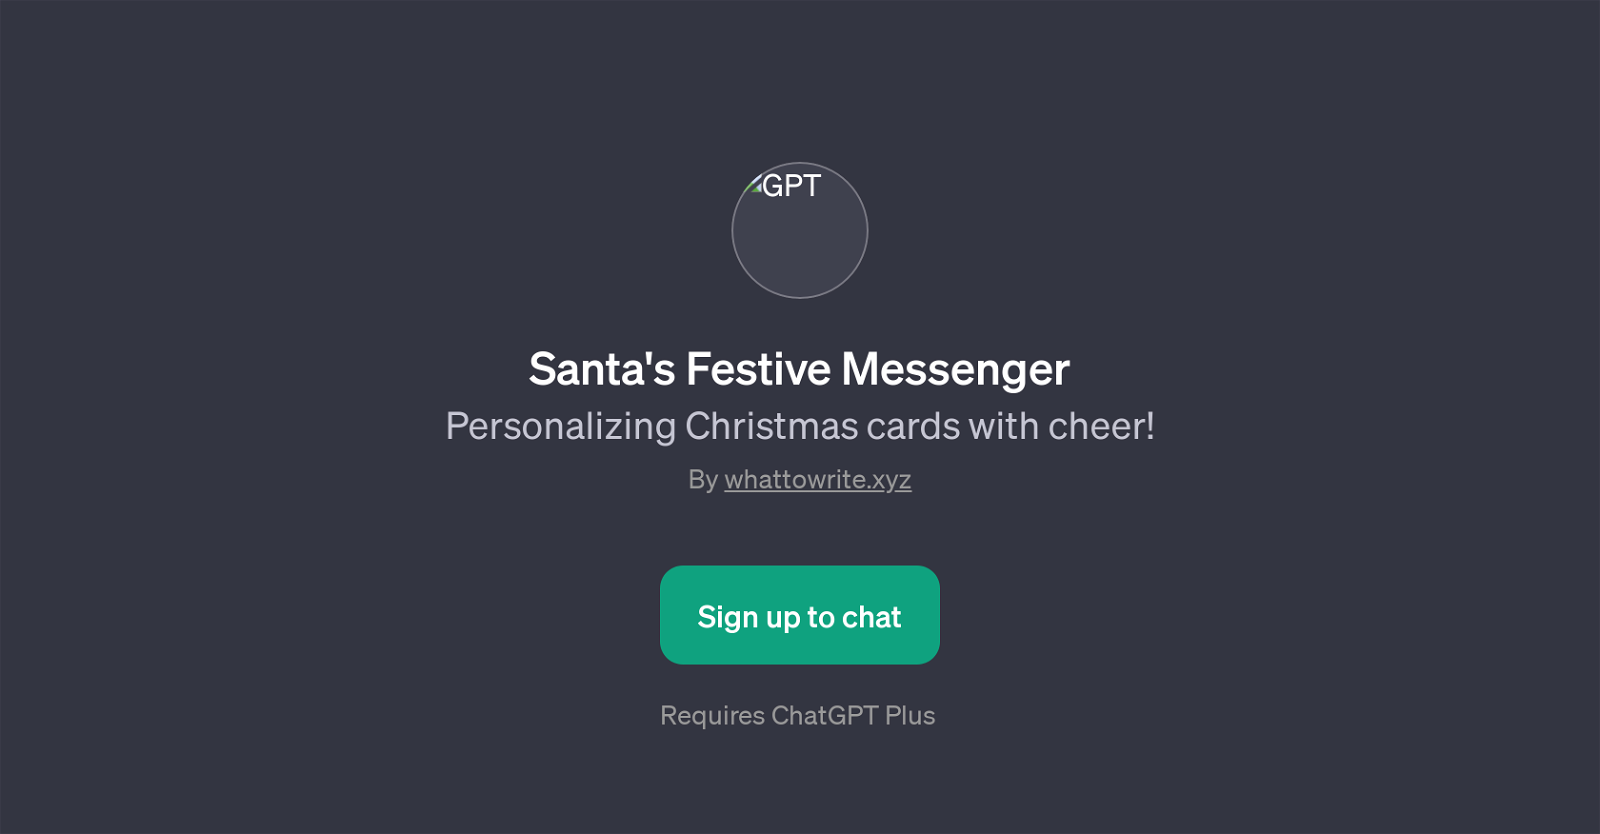 Santa's Festive Messenger website